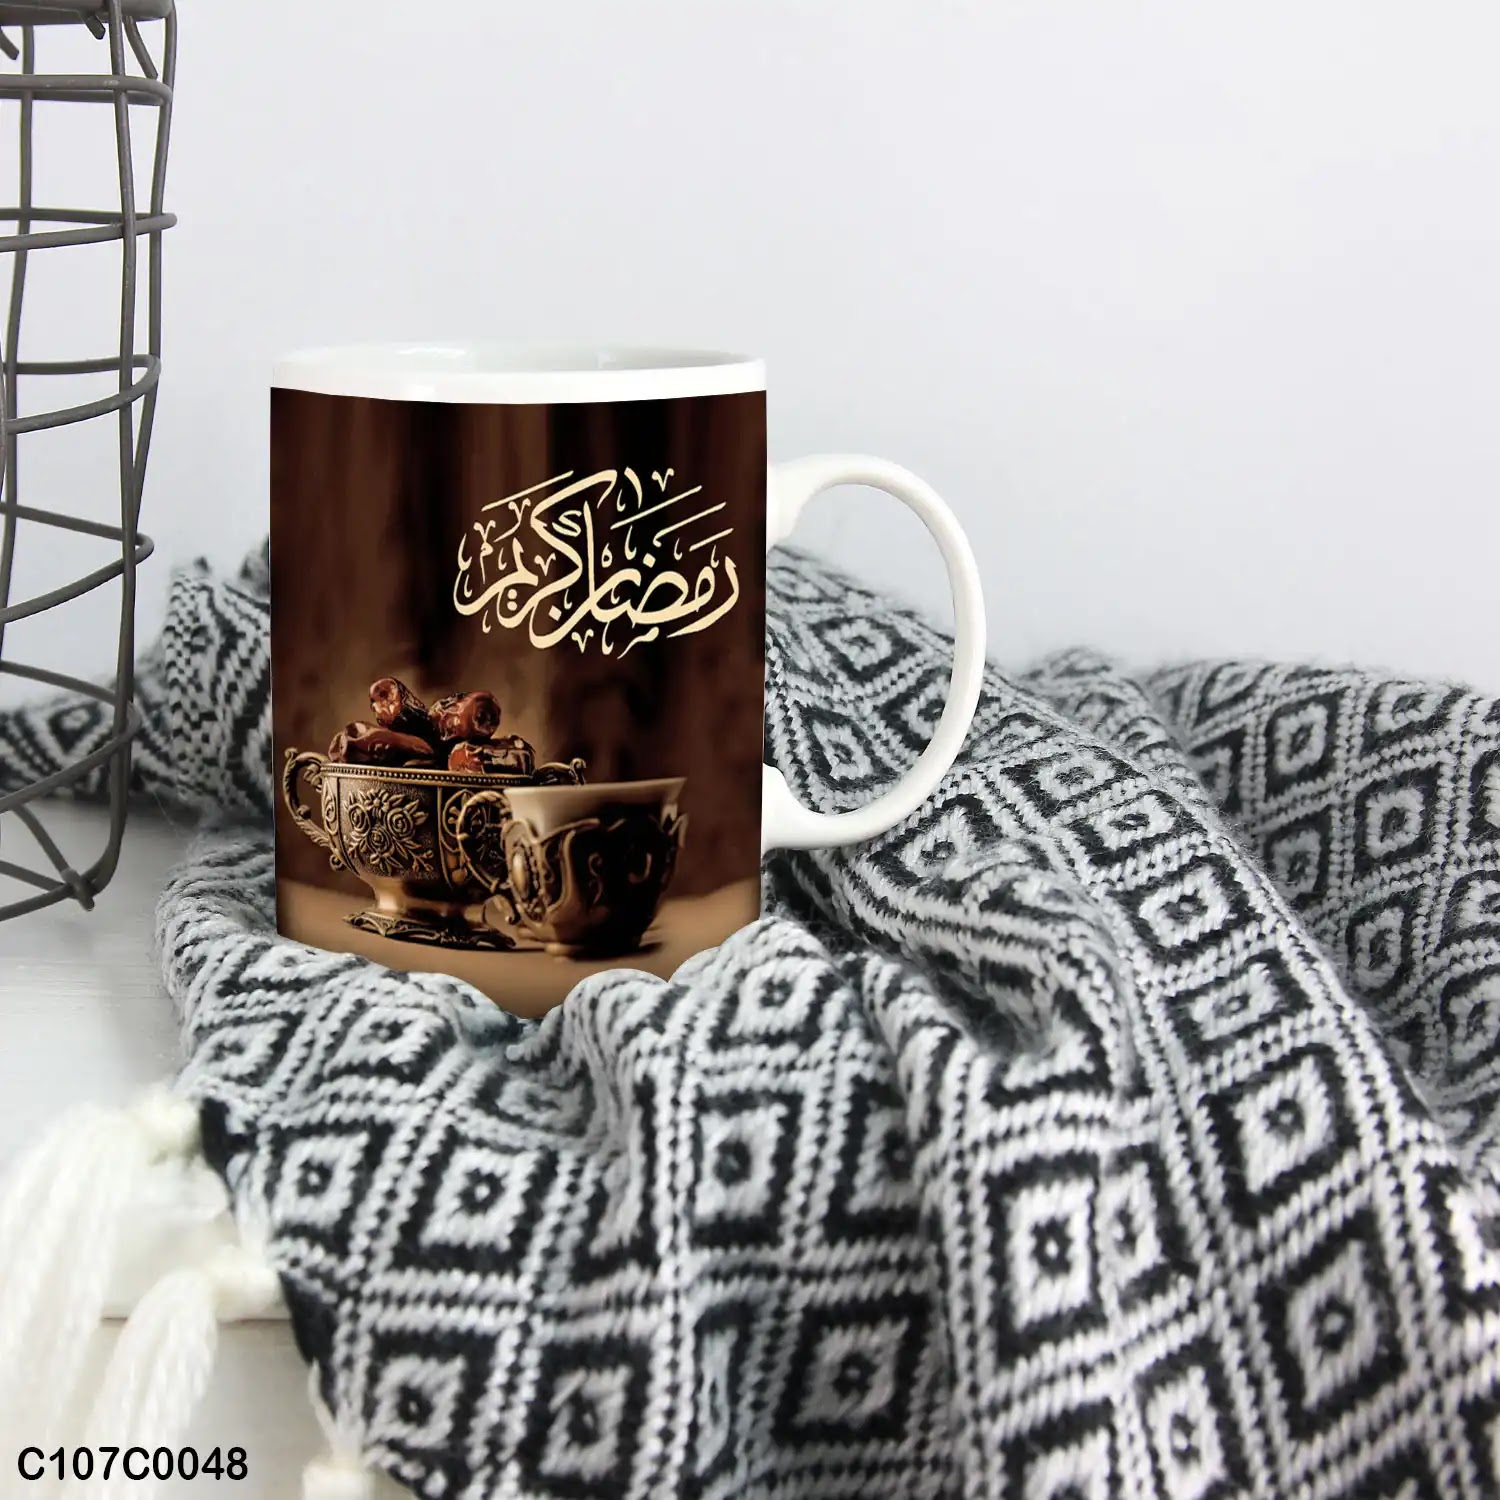 A mug (cup) printed with "Ramadan Kareem"